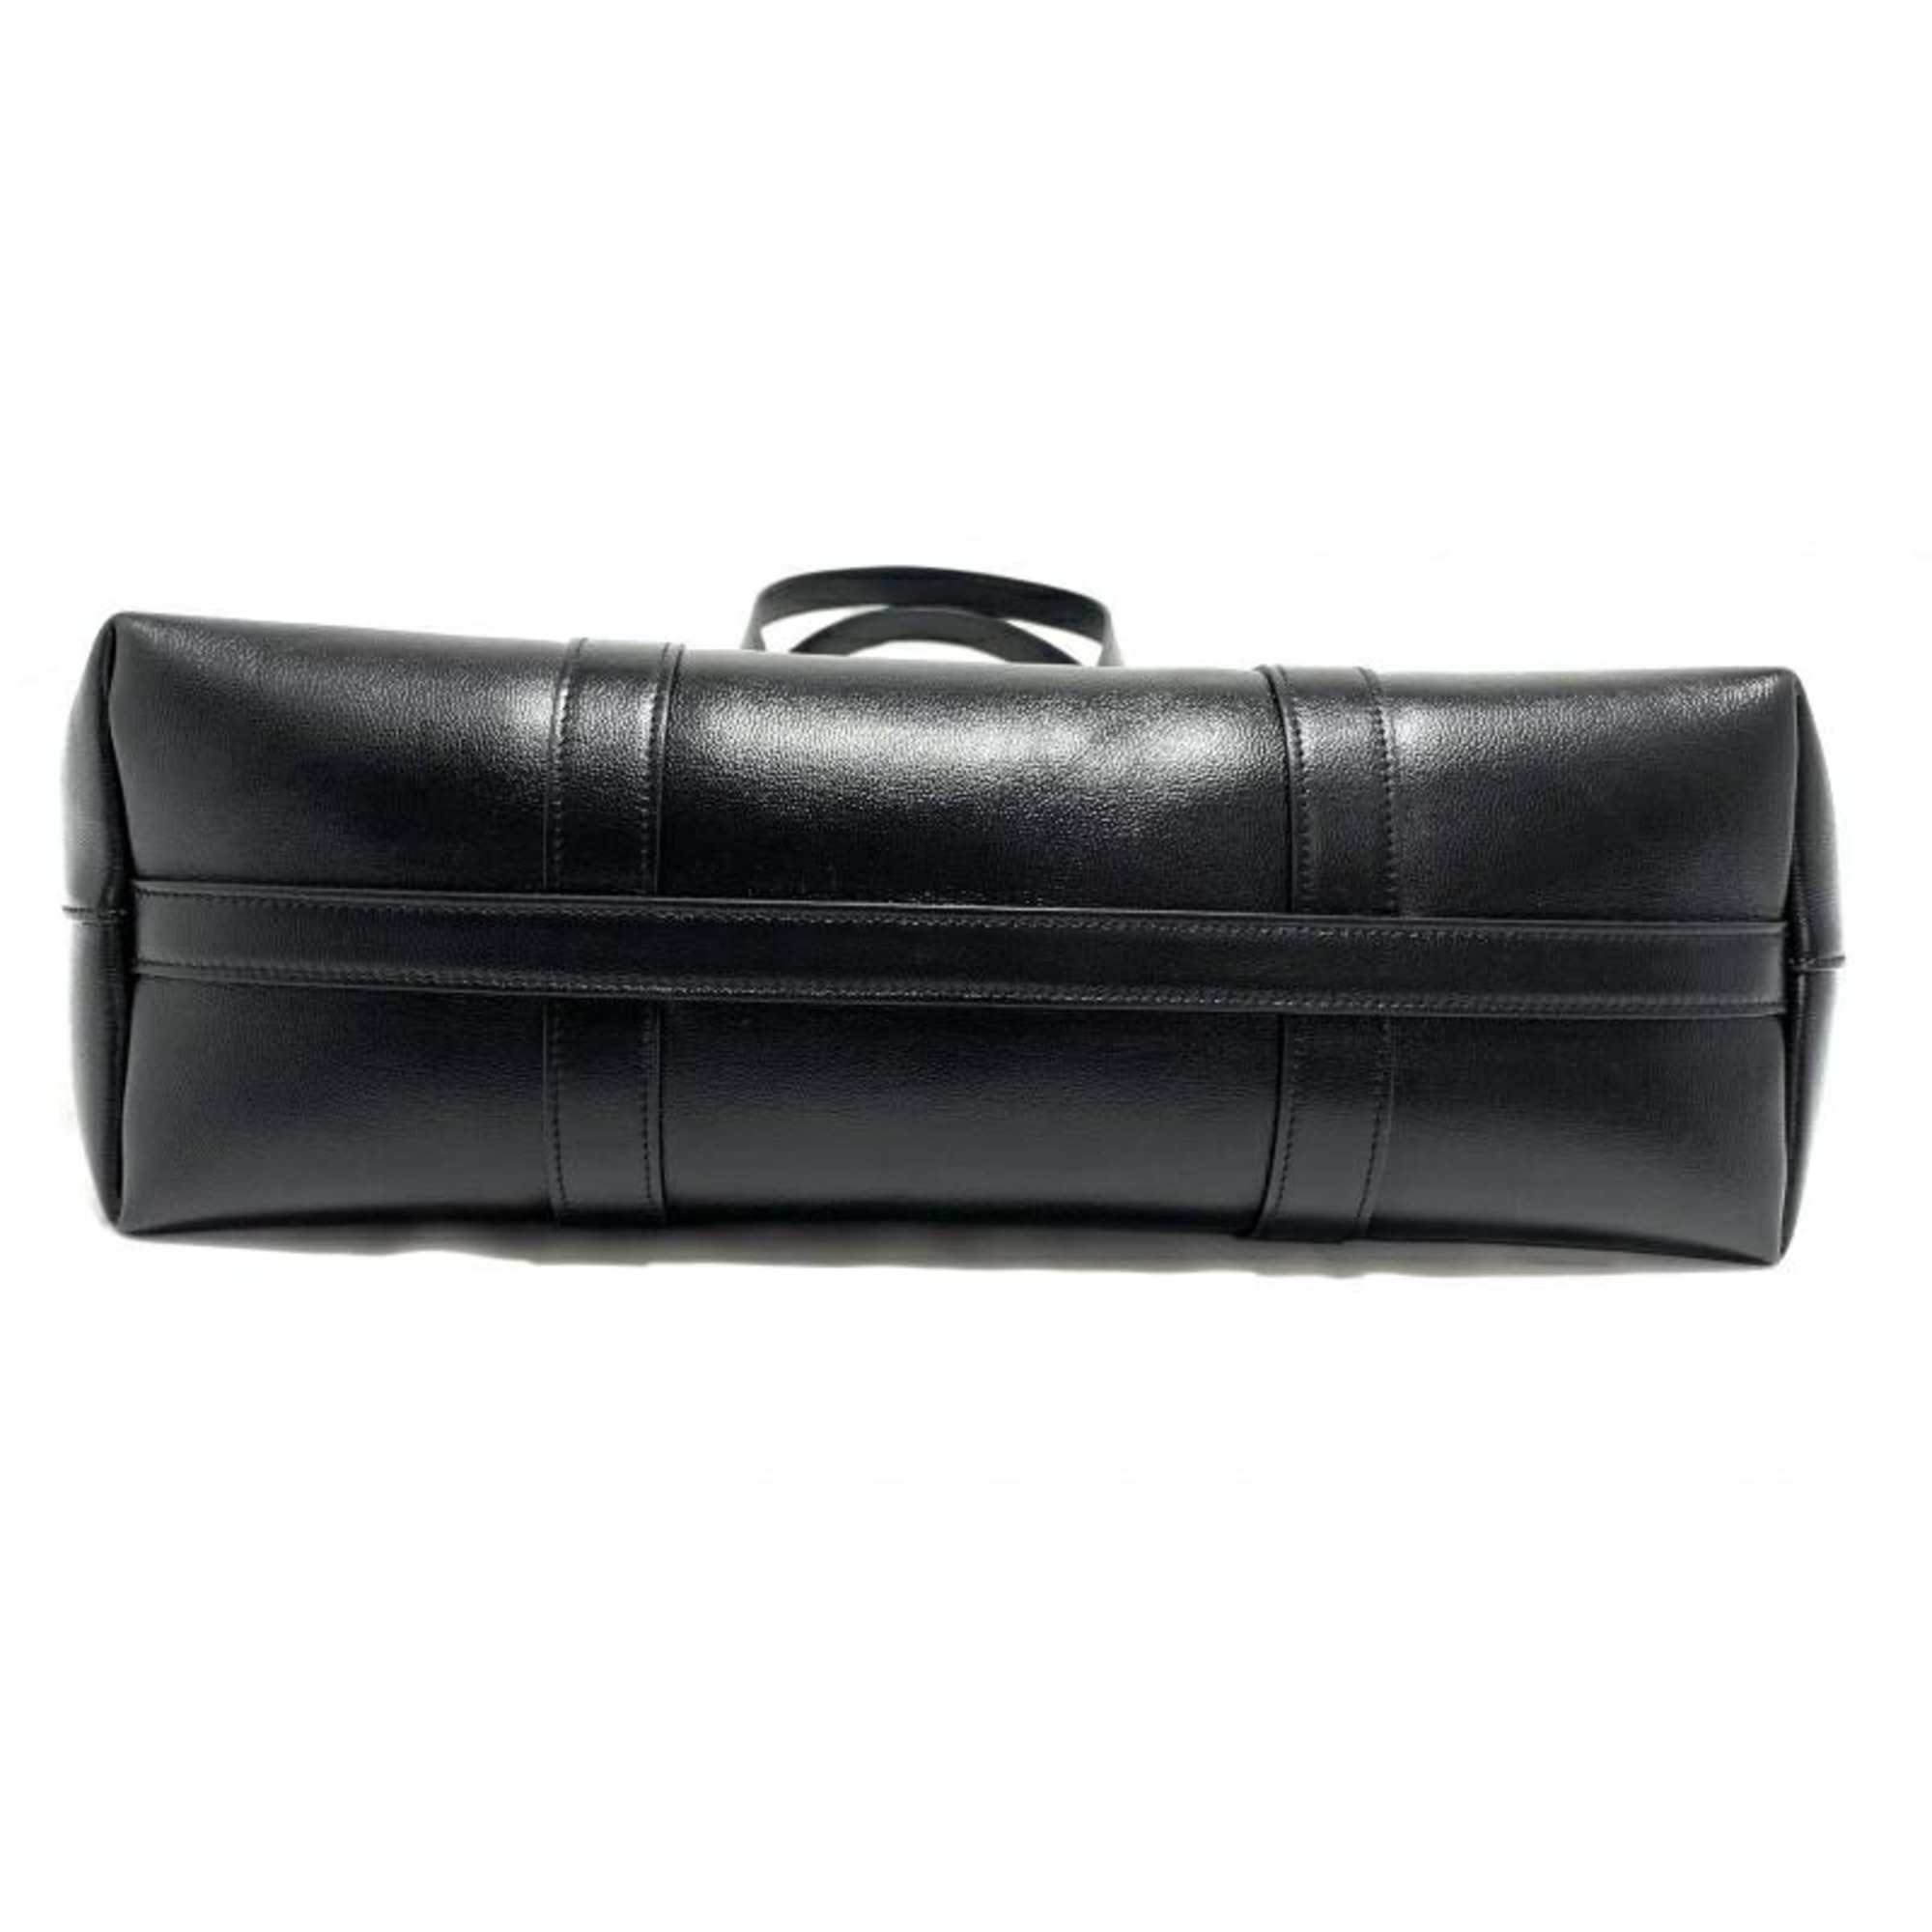 CELINE Smooth Calfskin Tote Bag with Buckle Cabas F-ME-3203 Celine Black